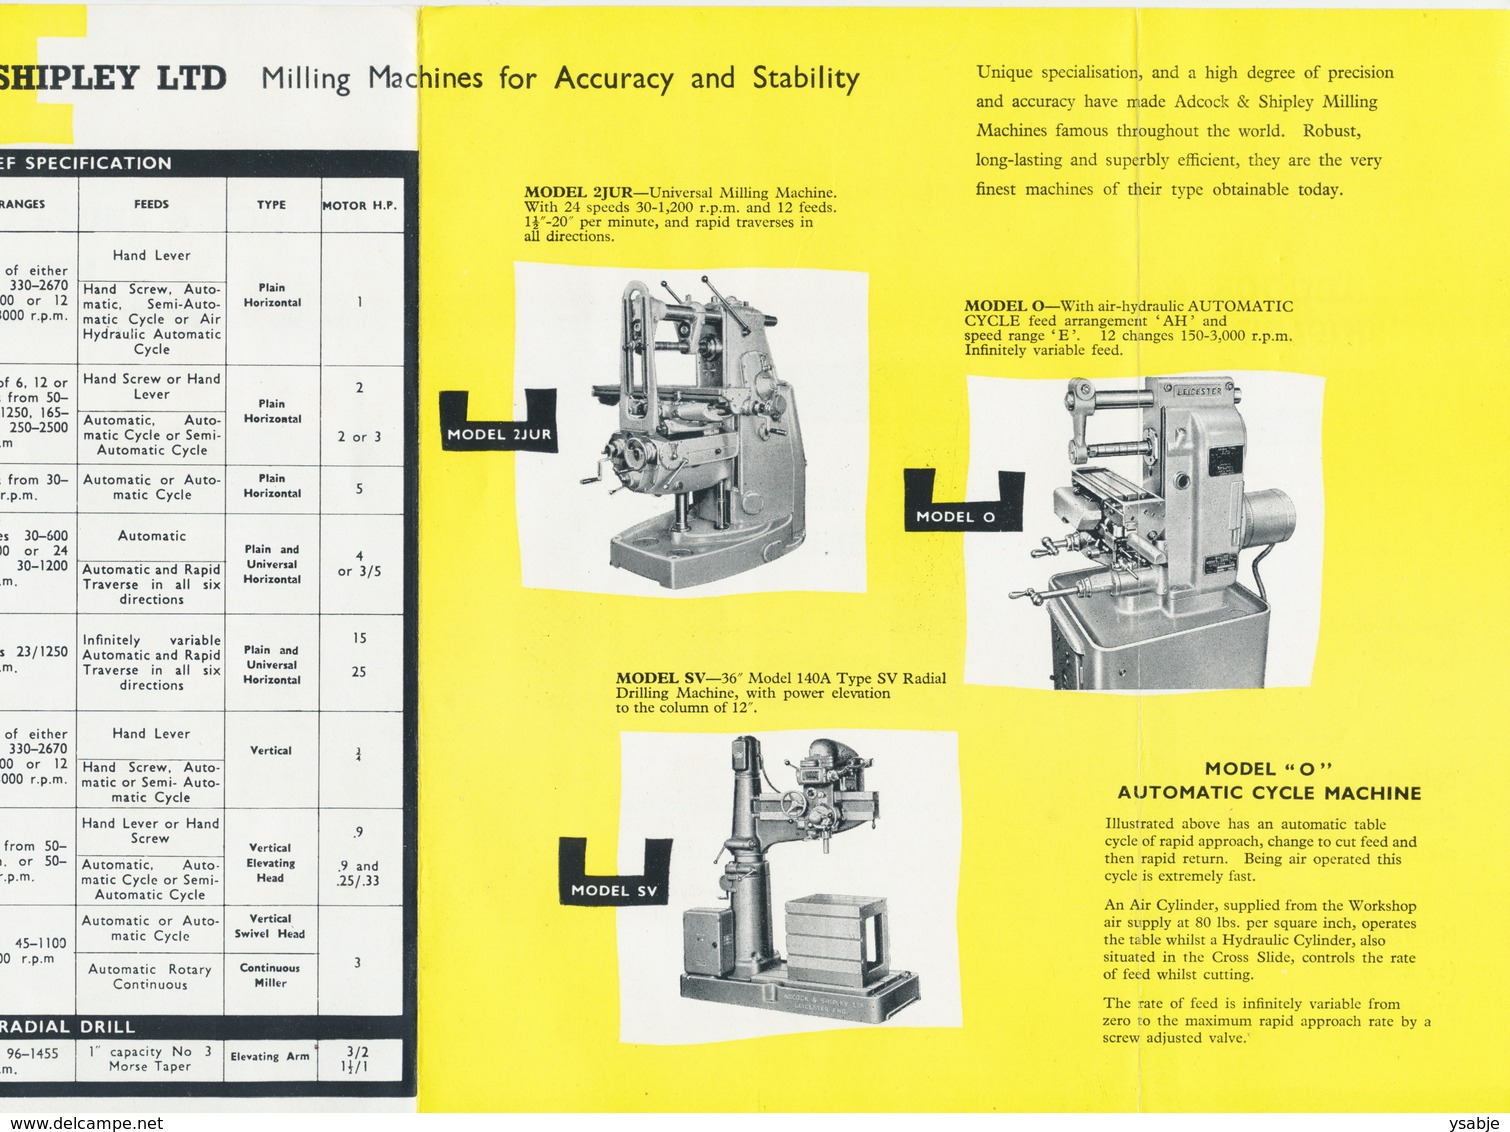 Adcock & Shipley Ltd - Milling Machines - Reclamefolder - Andere Toestellen